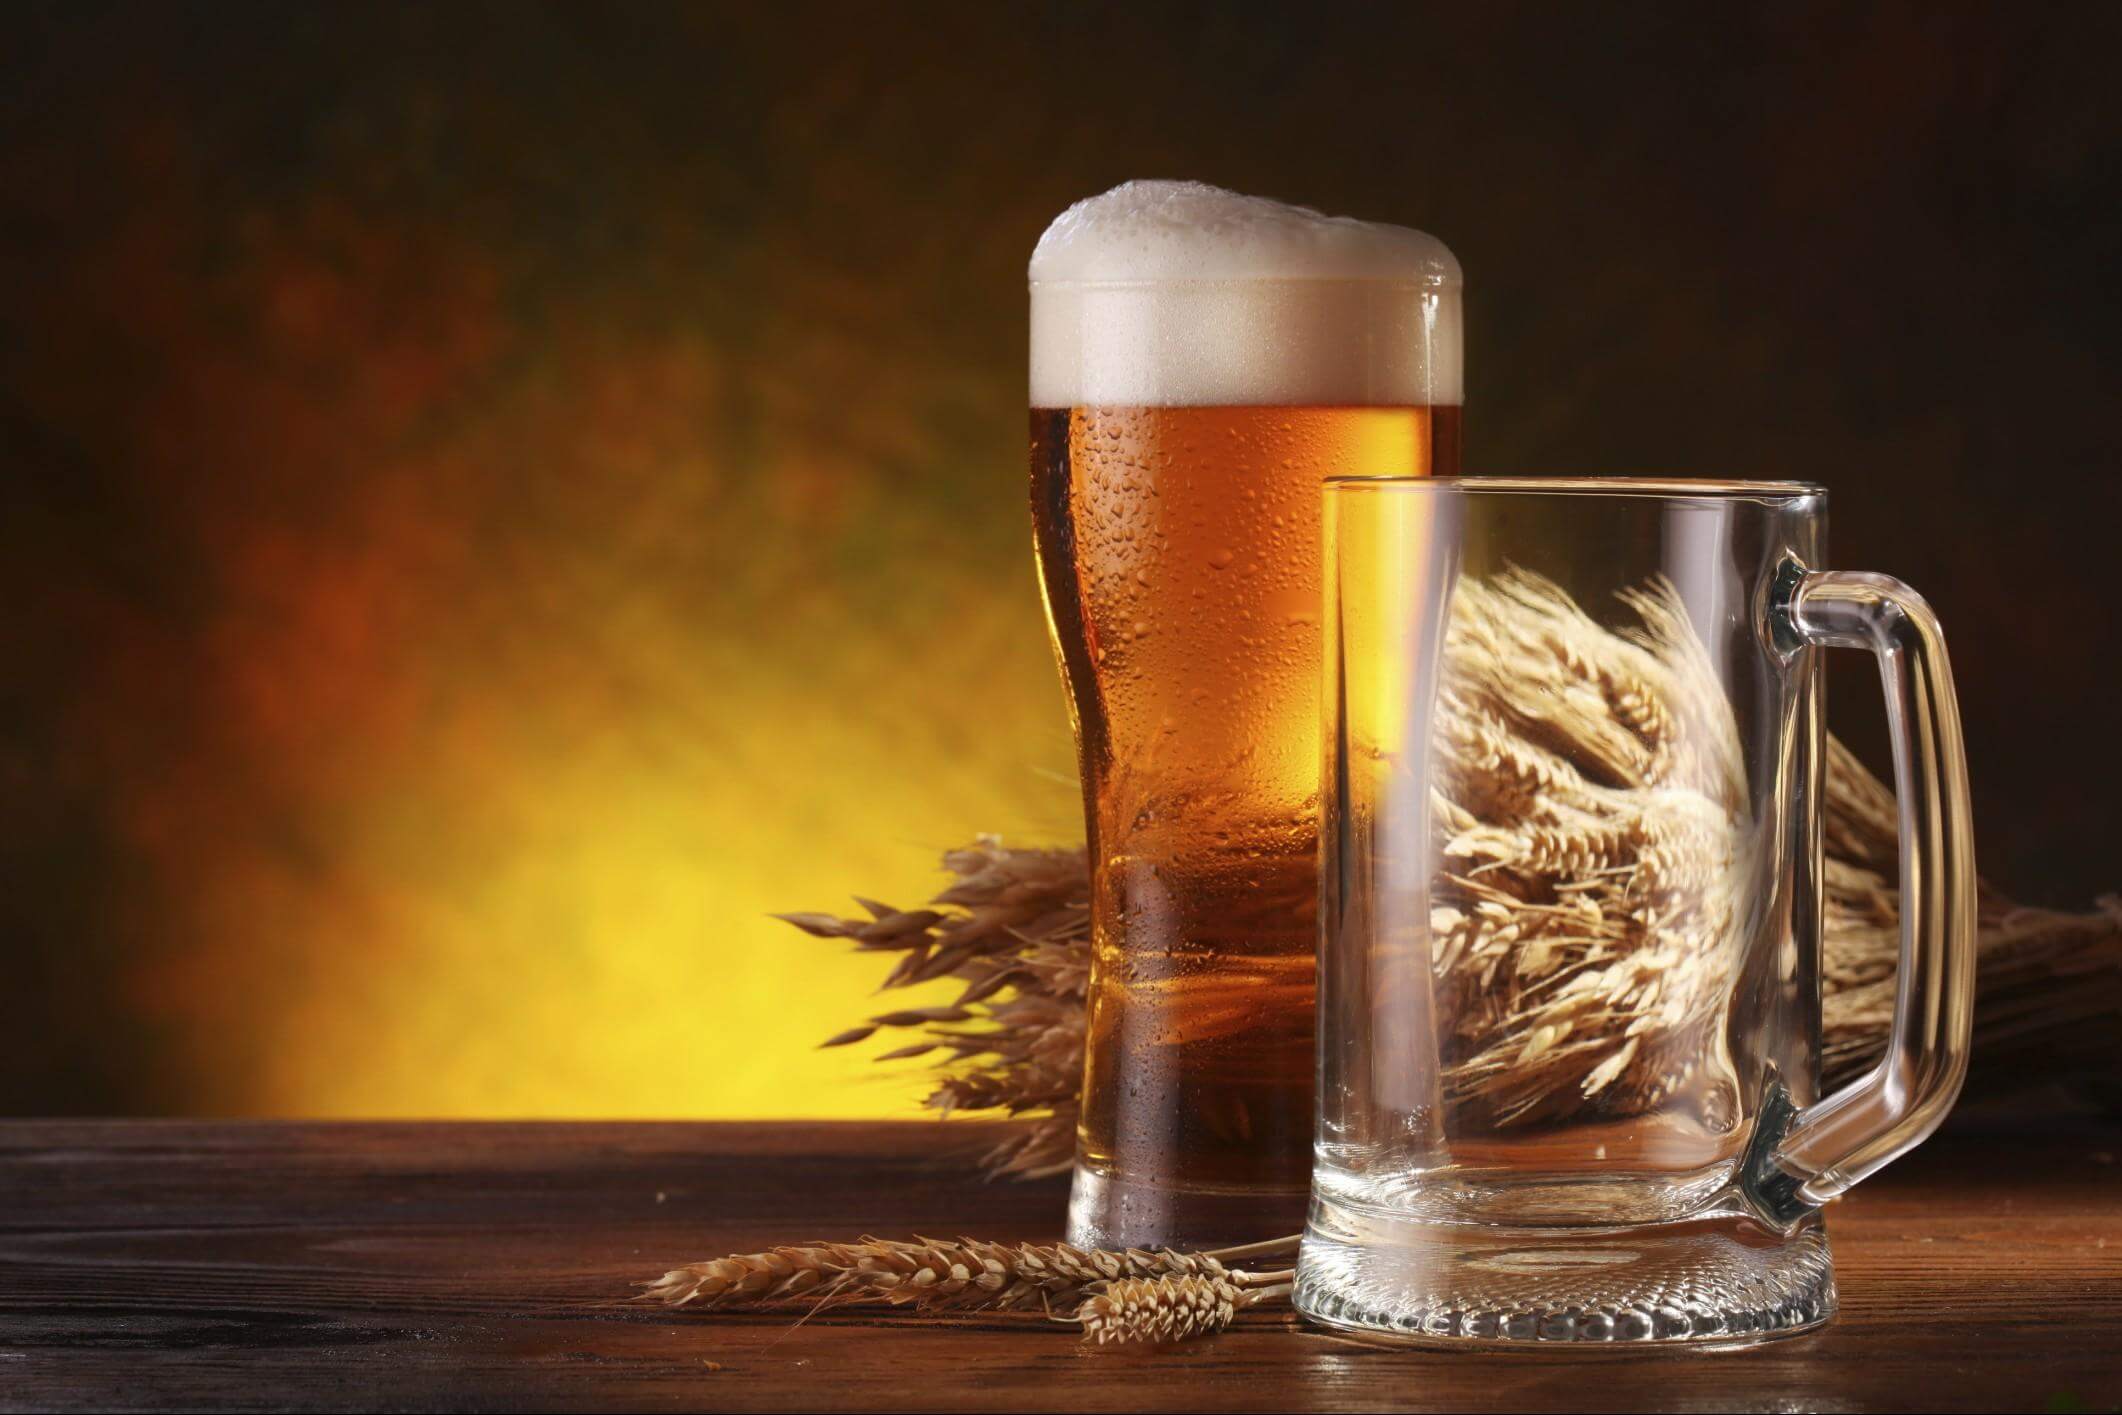 Формирование правильного отношения к пиву и к пивоваренной отрасли в целом